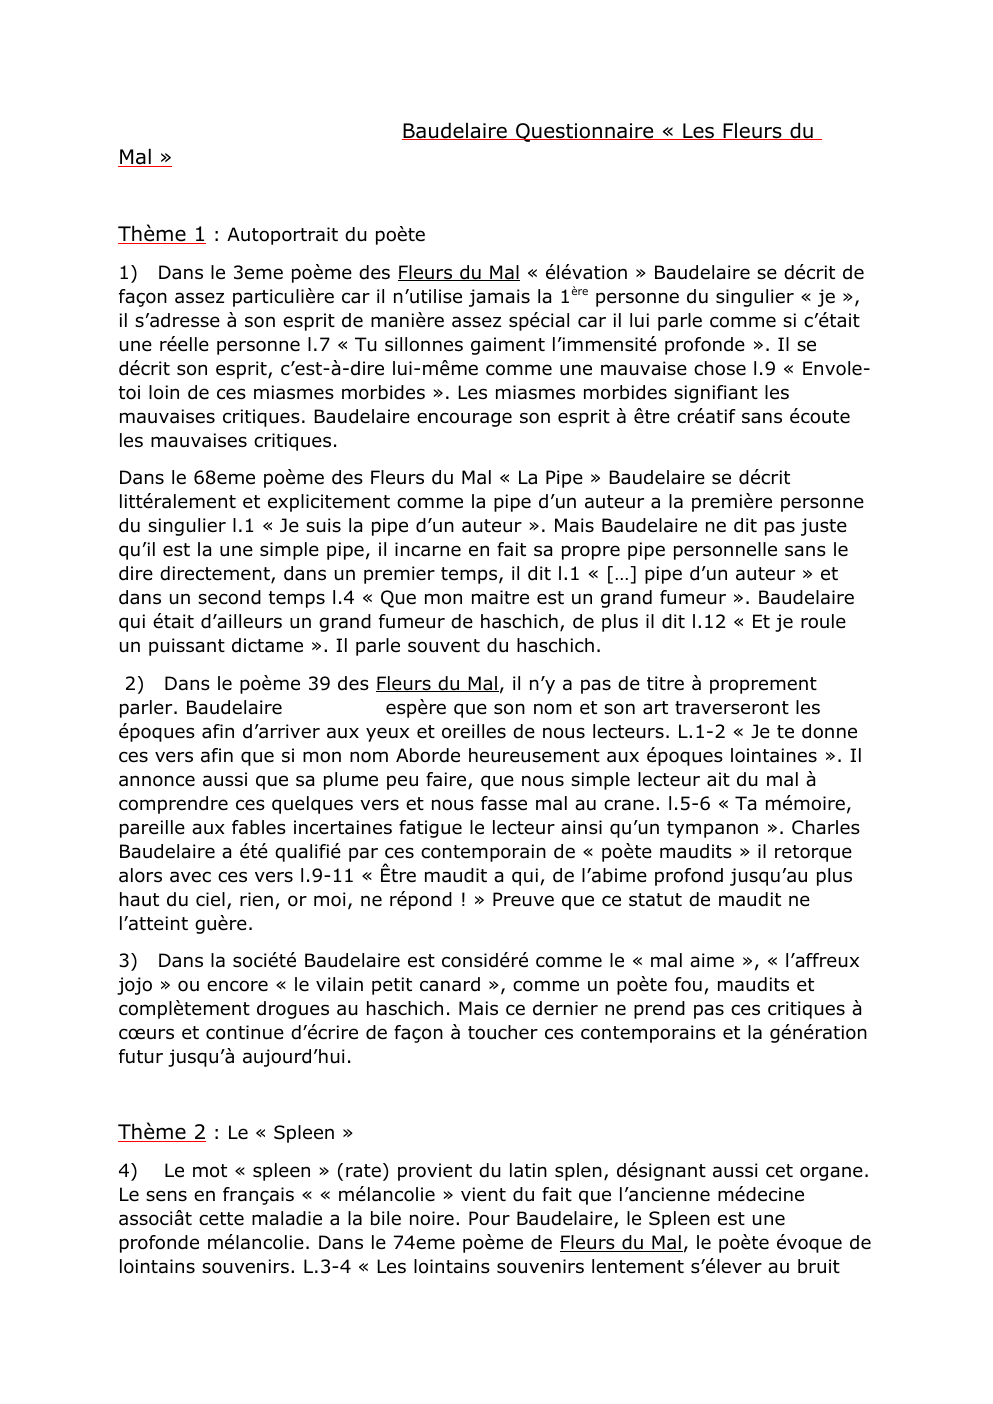 Prévisualisation du document Questionnaire Baudelaire